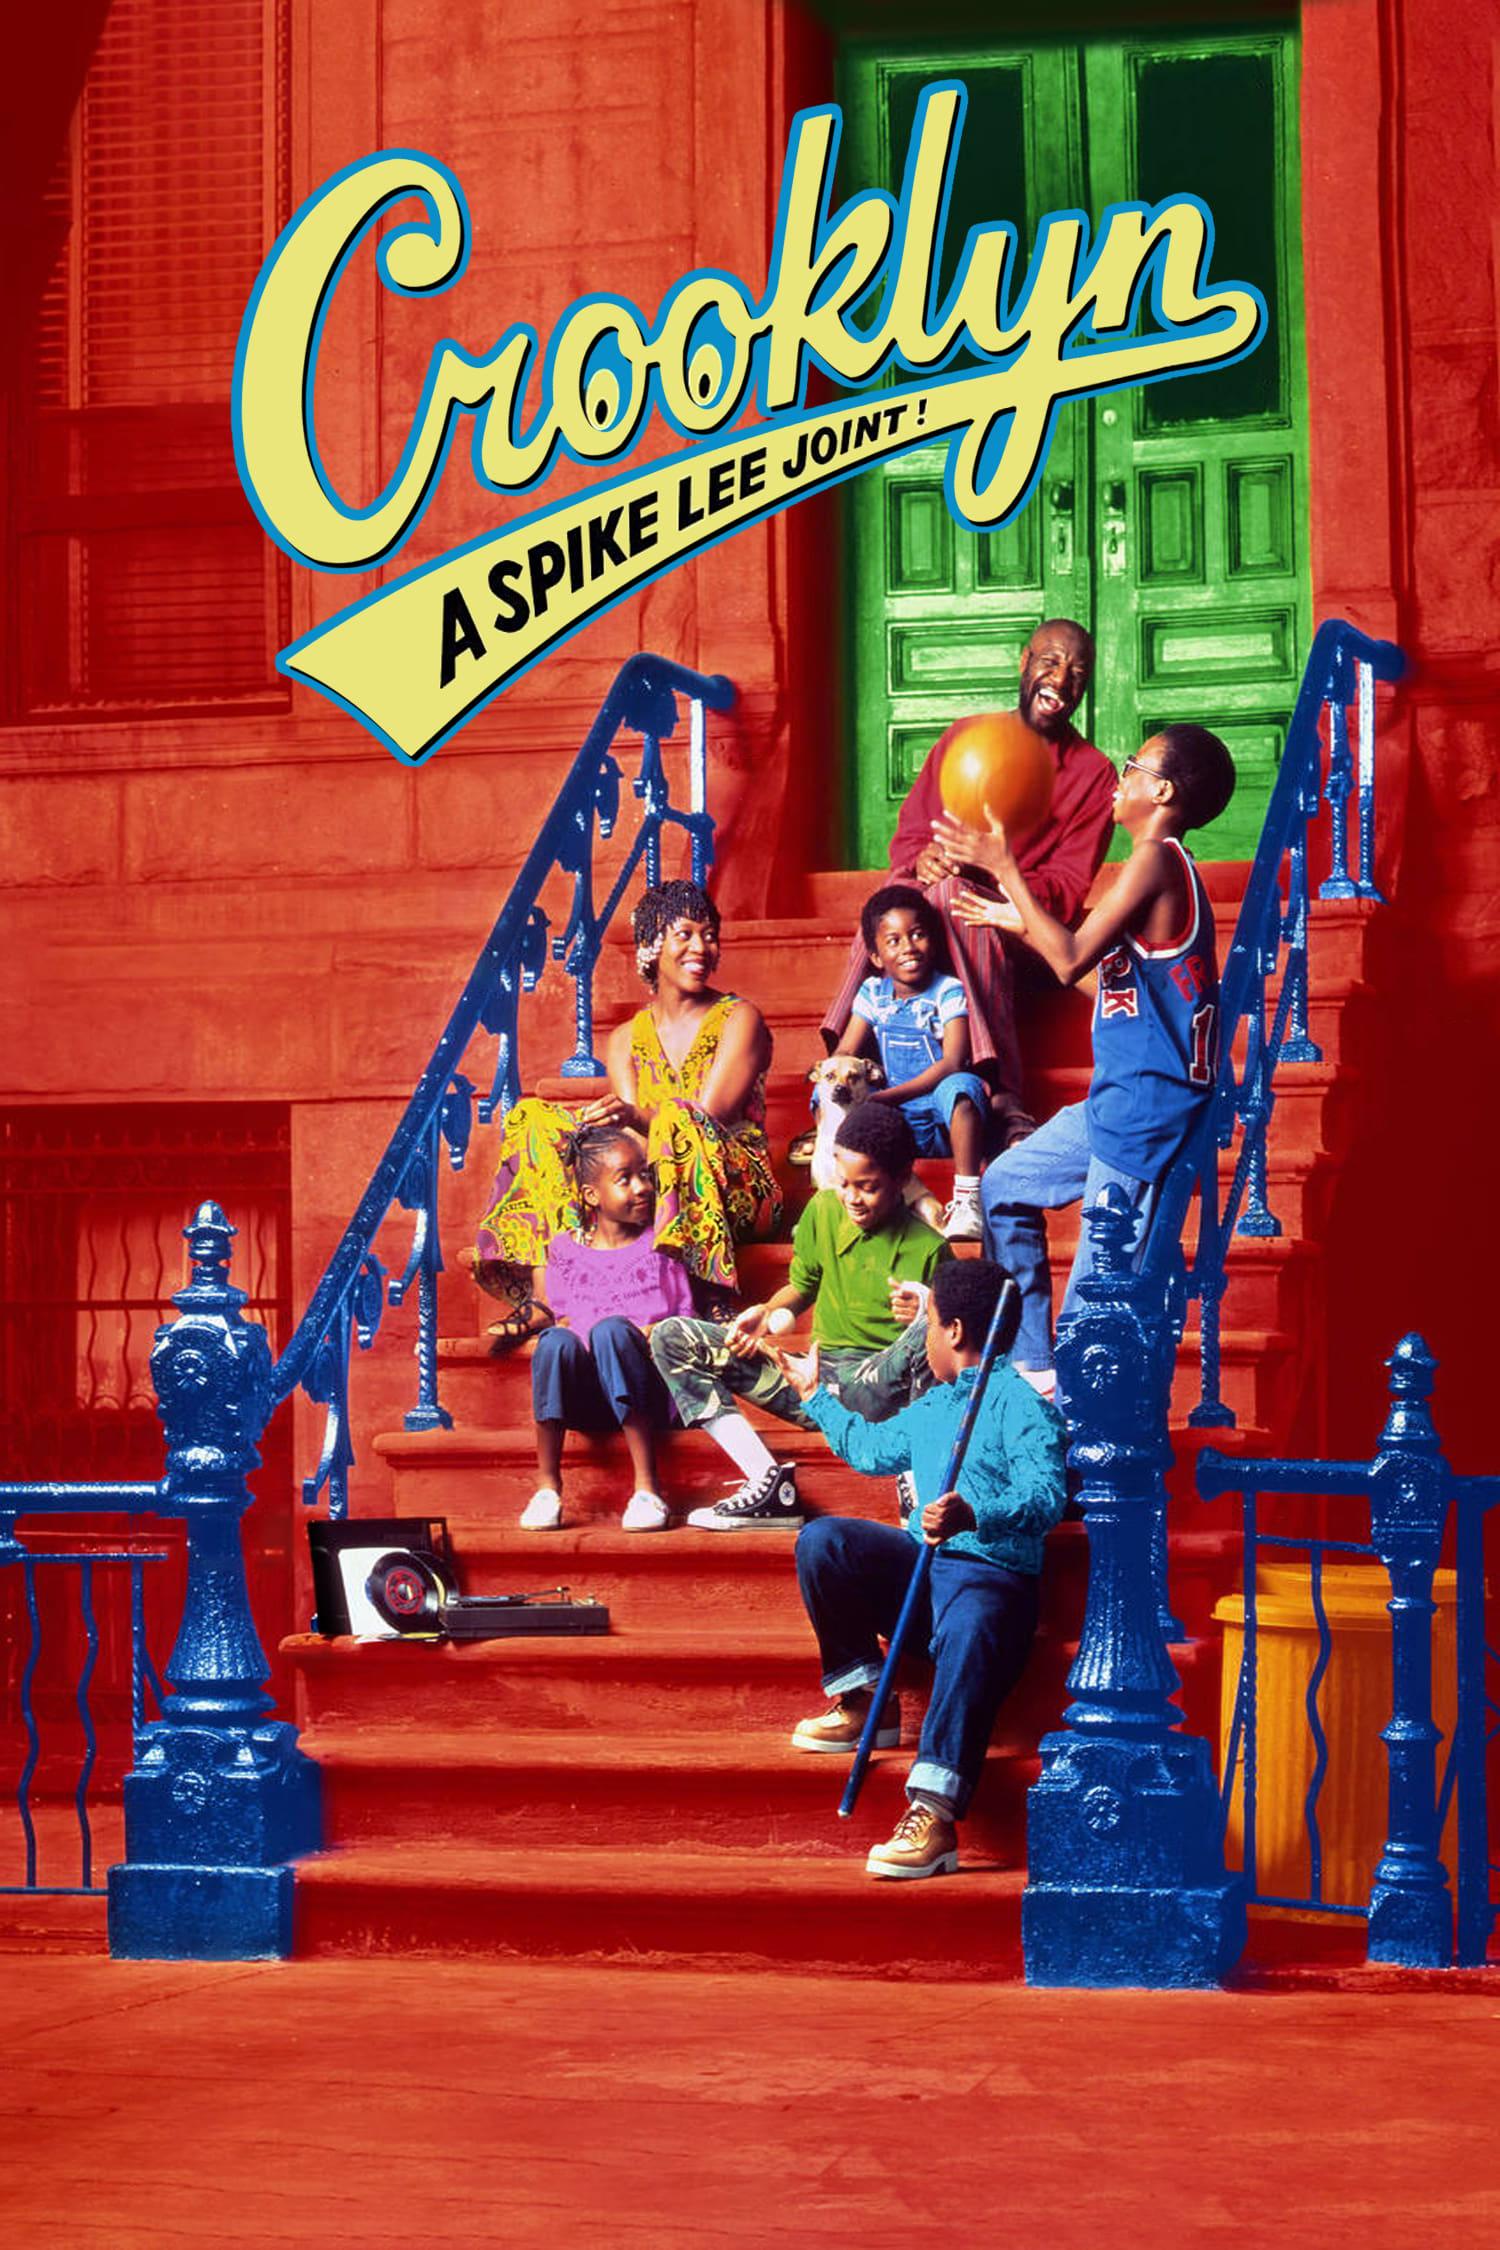 Crooklyn poster